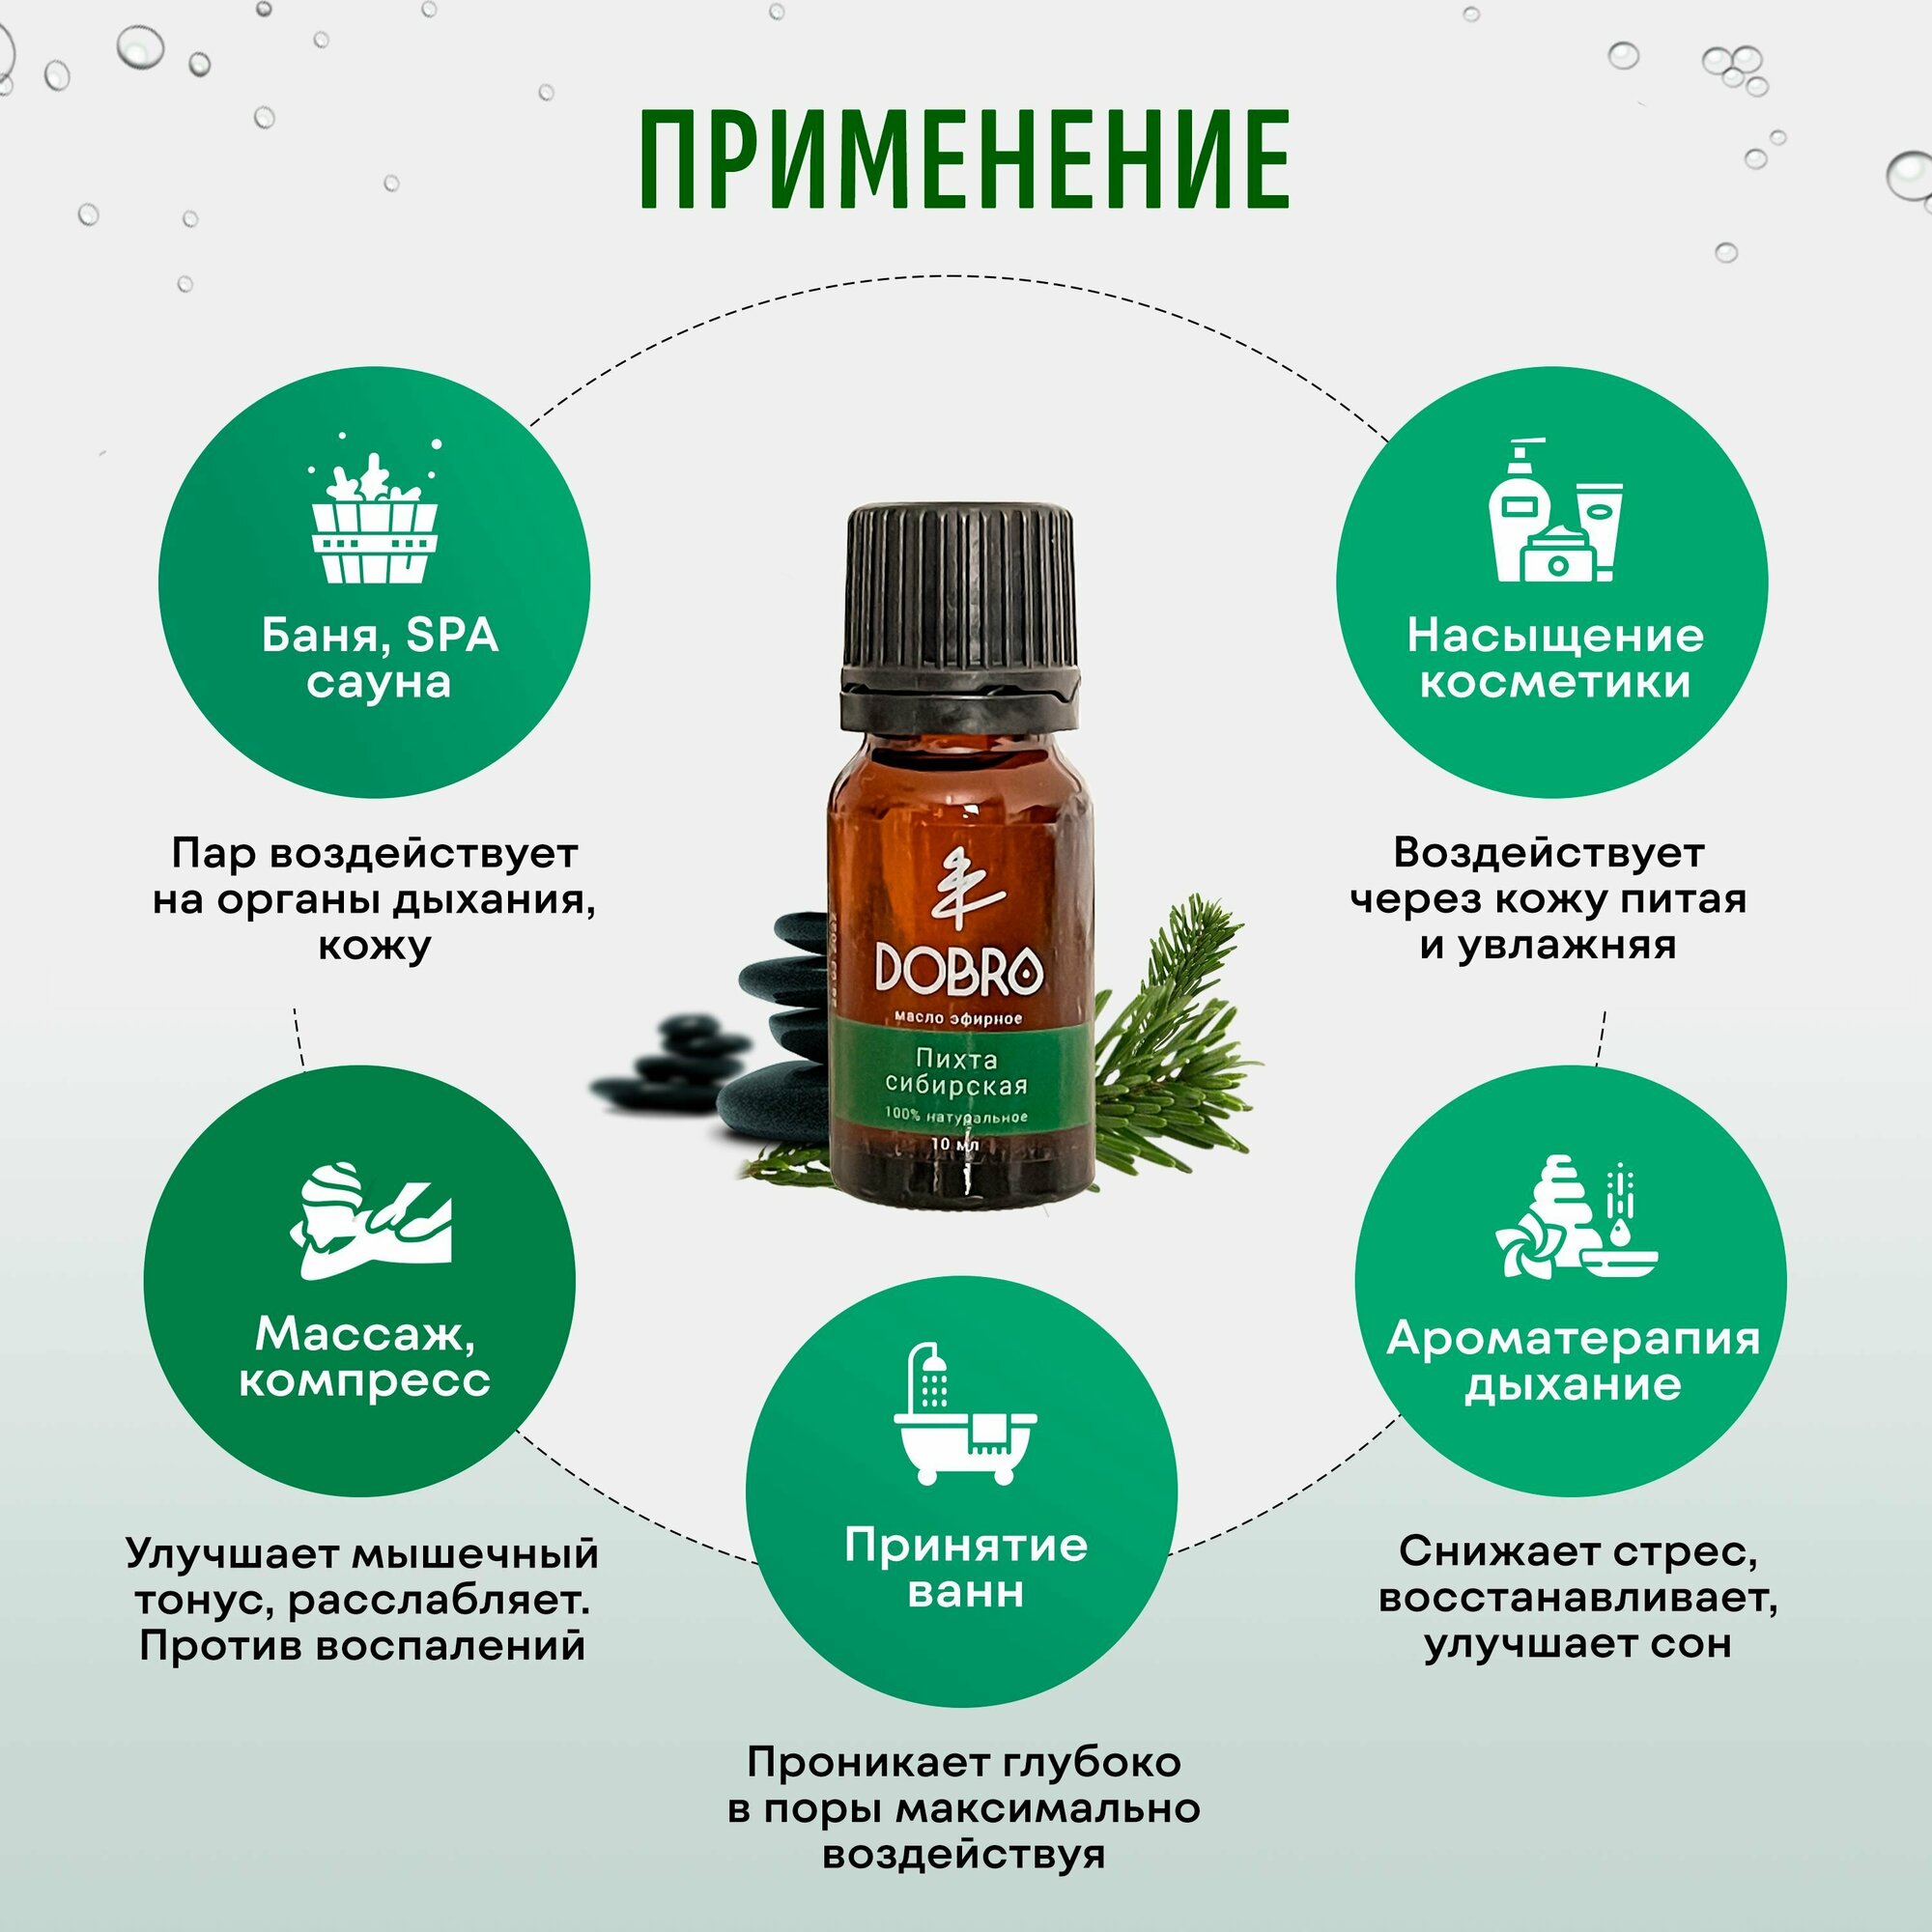 VOZMI DOBRO Натуральное эфирное масло Пихта Сибирская /10 мл/ Премиум